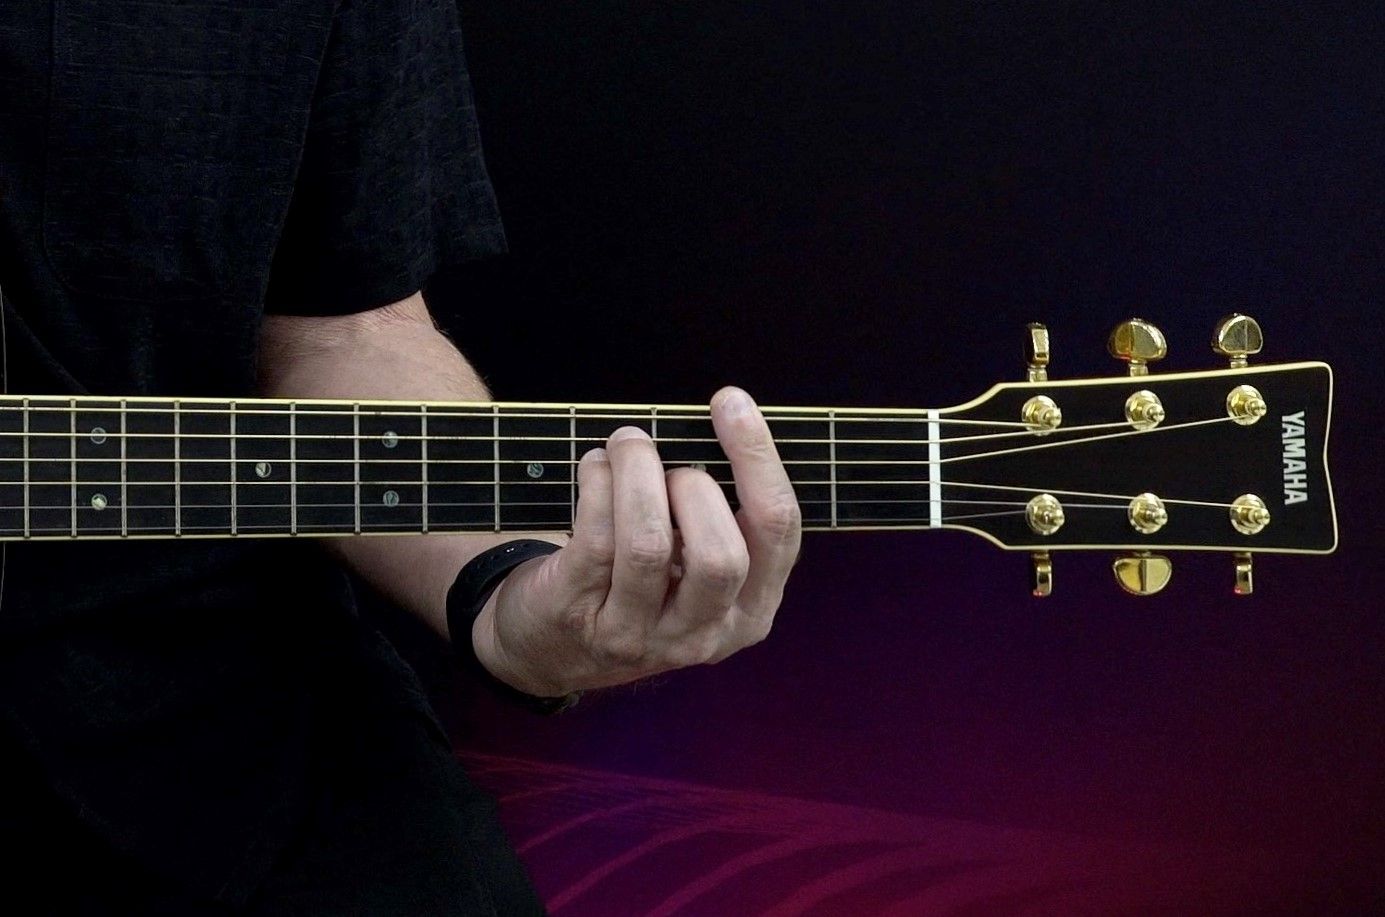 Closeup of hand playing guitar neck.